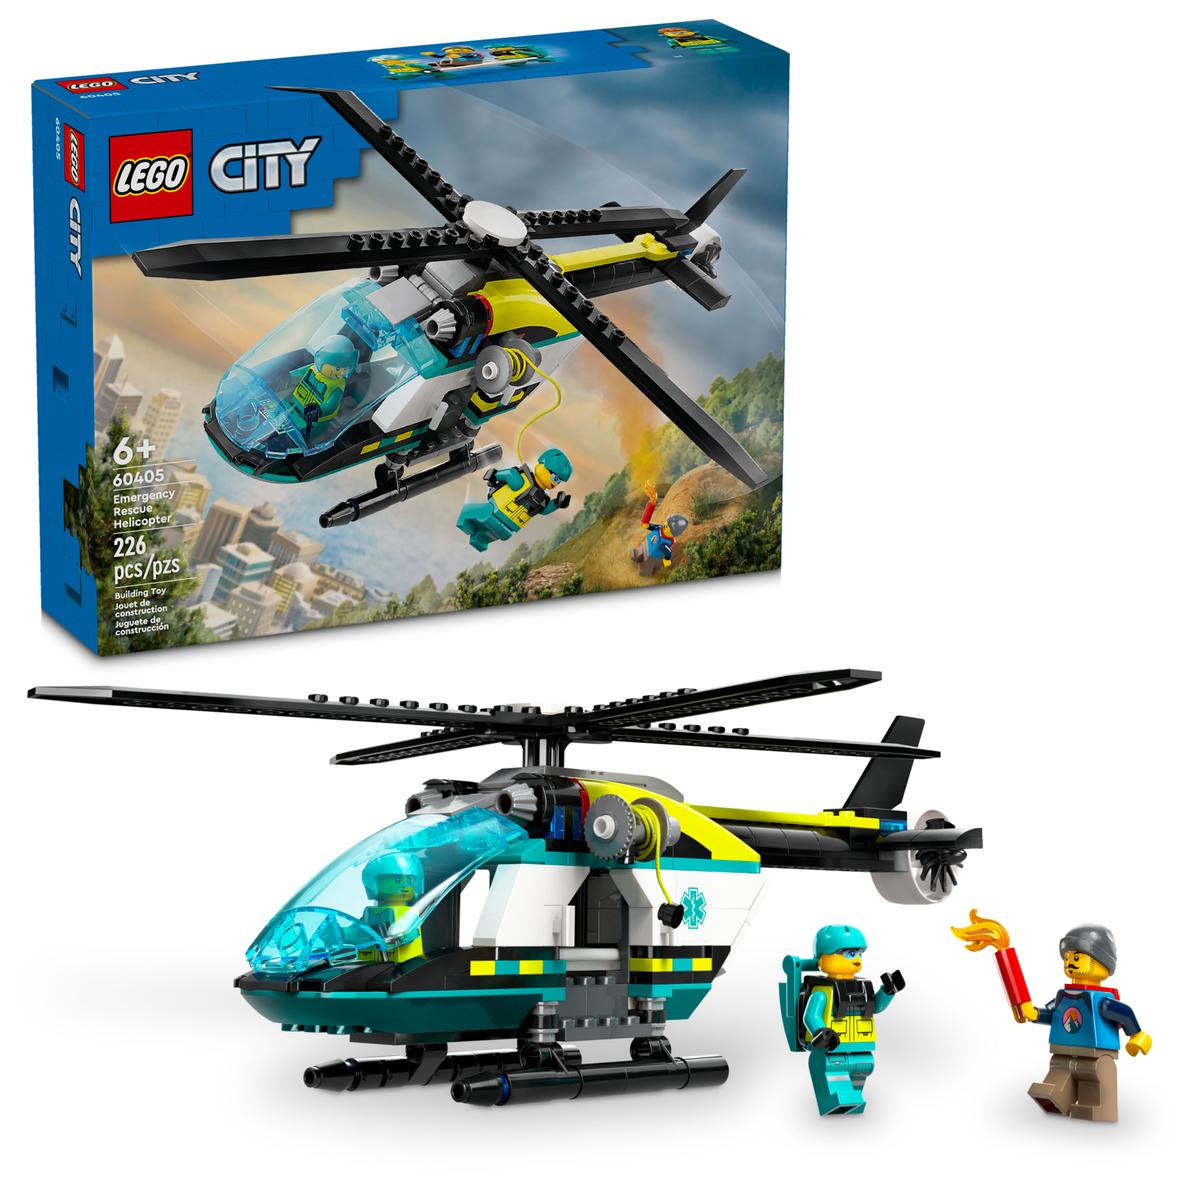 Lego City 60405 - Rettungshubschrauber